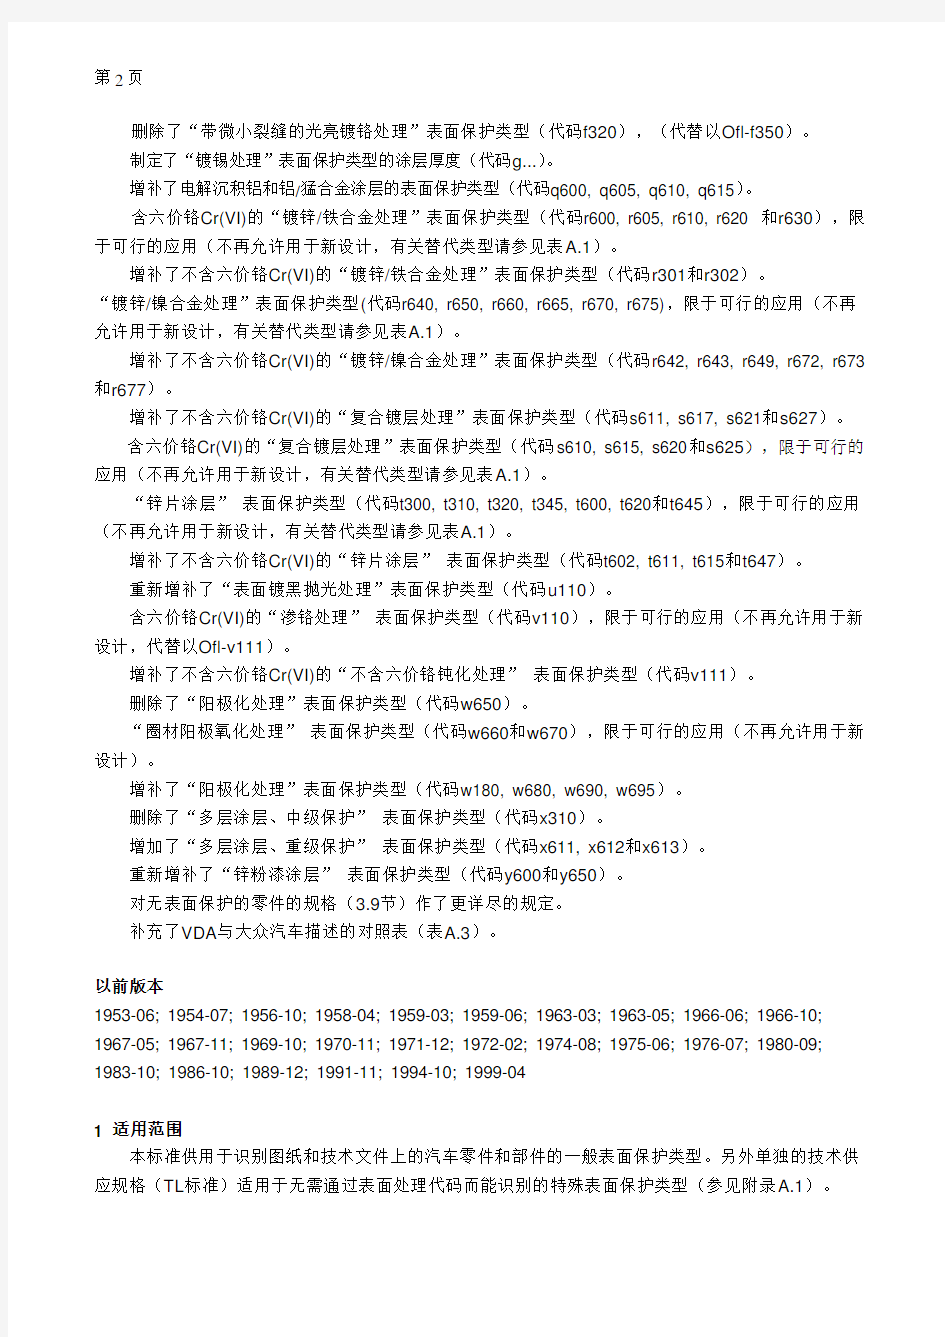 表面处理标准大众13750(中文)